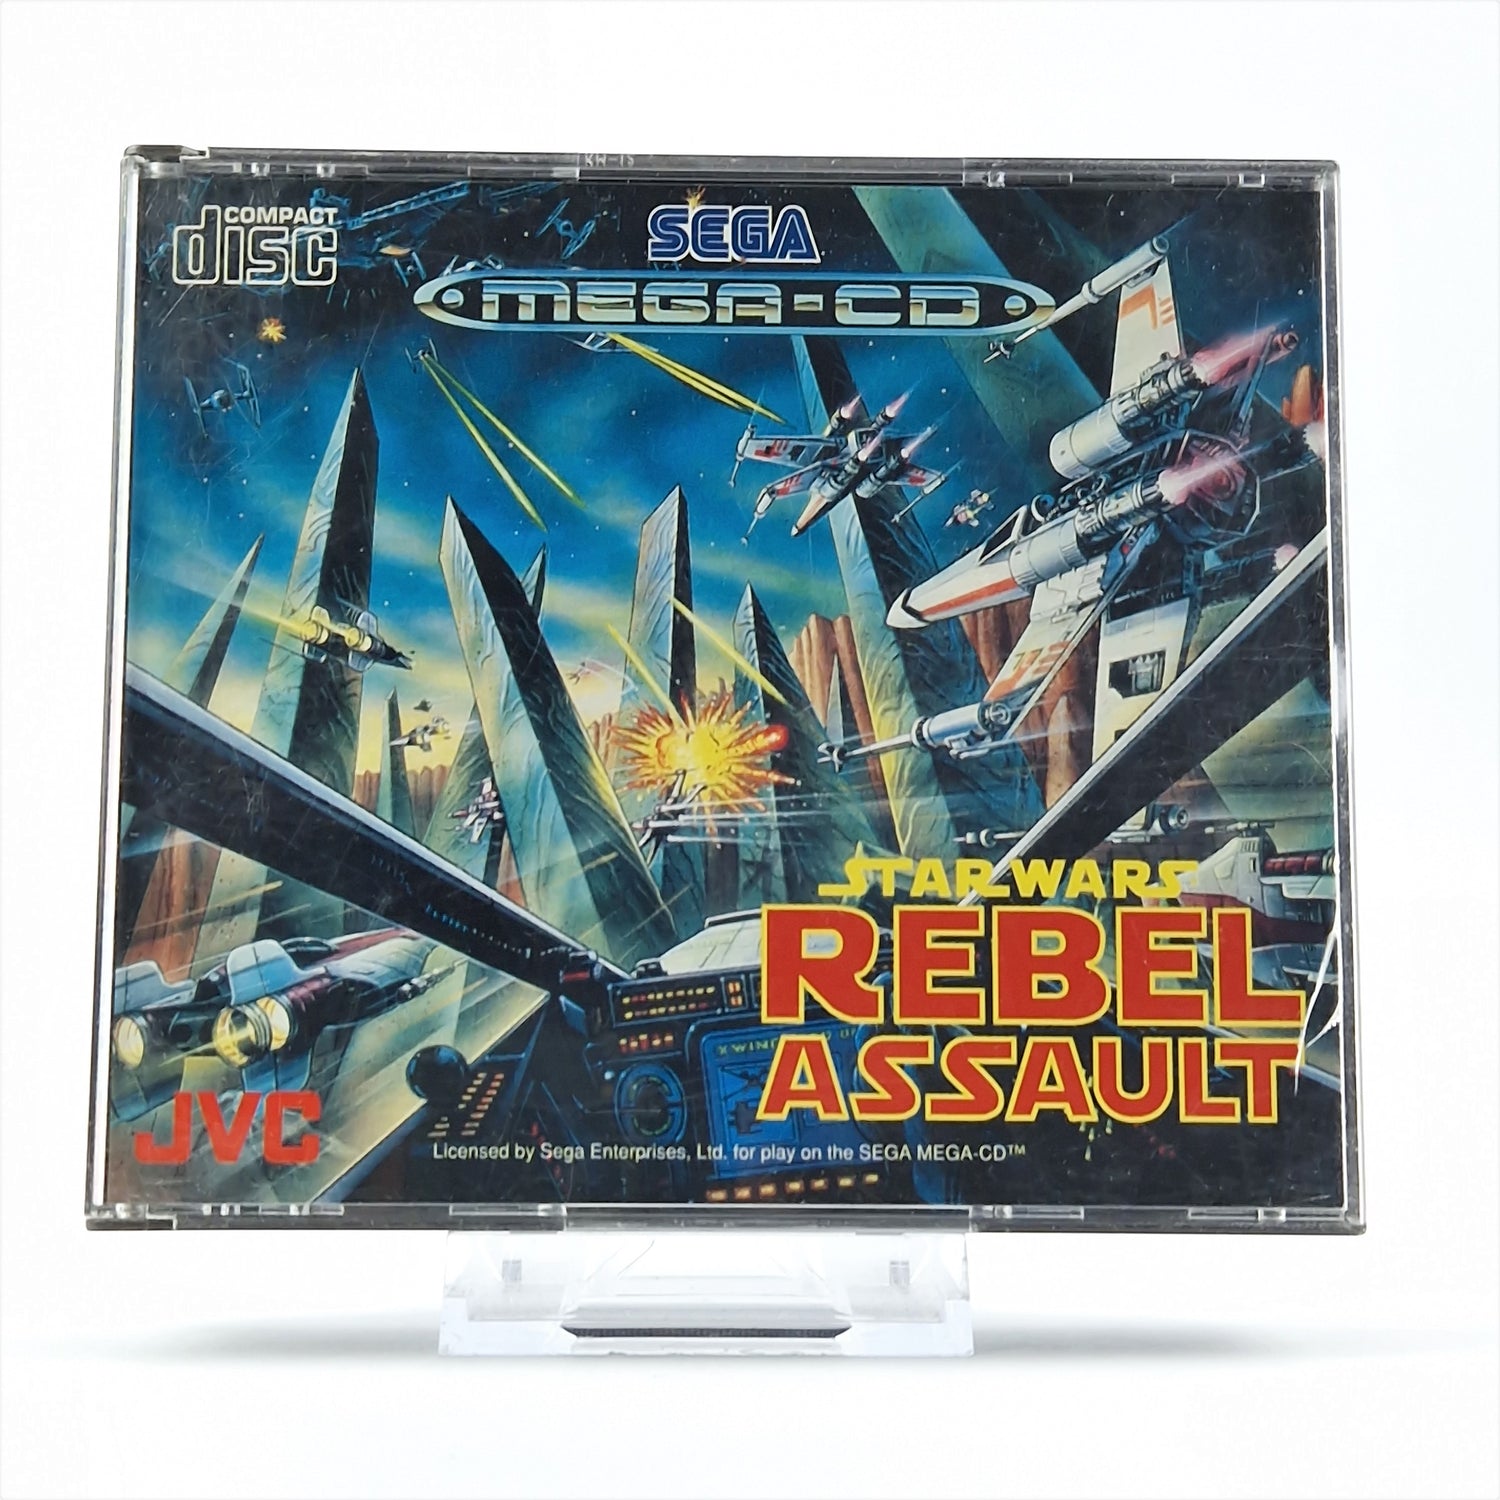 Sega Mega CD Game: Star Wars Rebel Assault - CD Instructions OVP / MCD PAL Disk